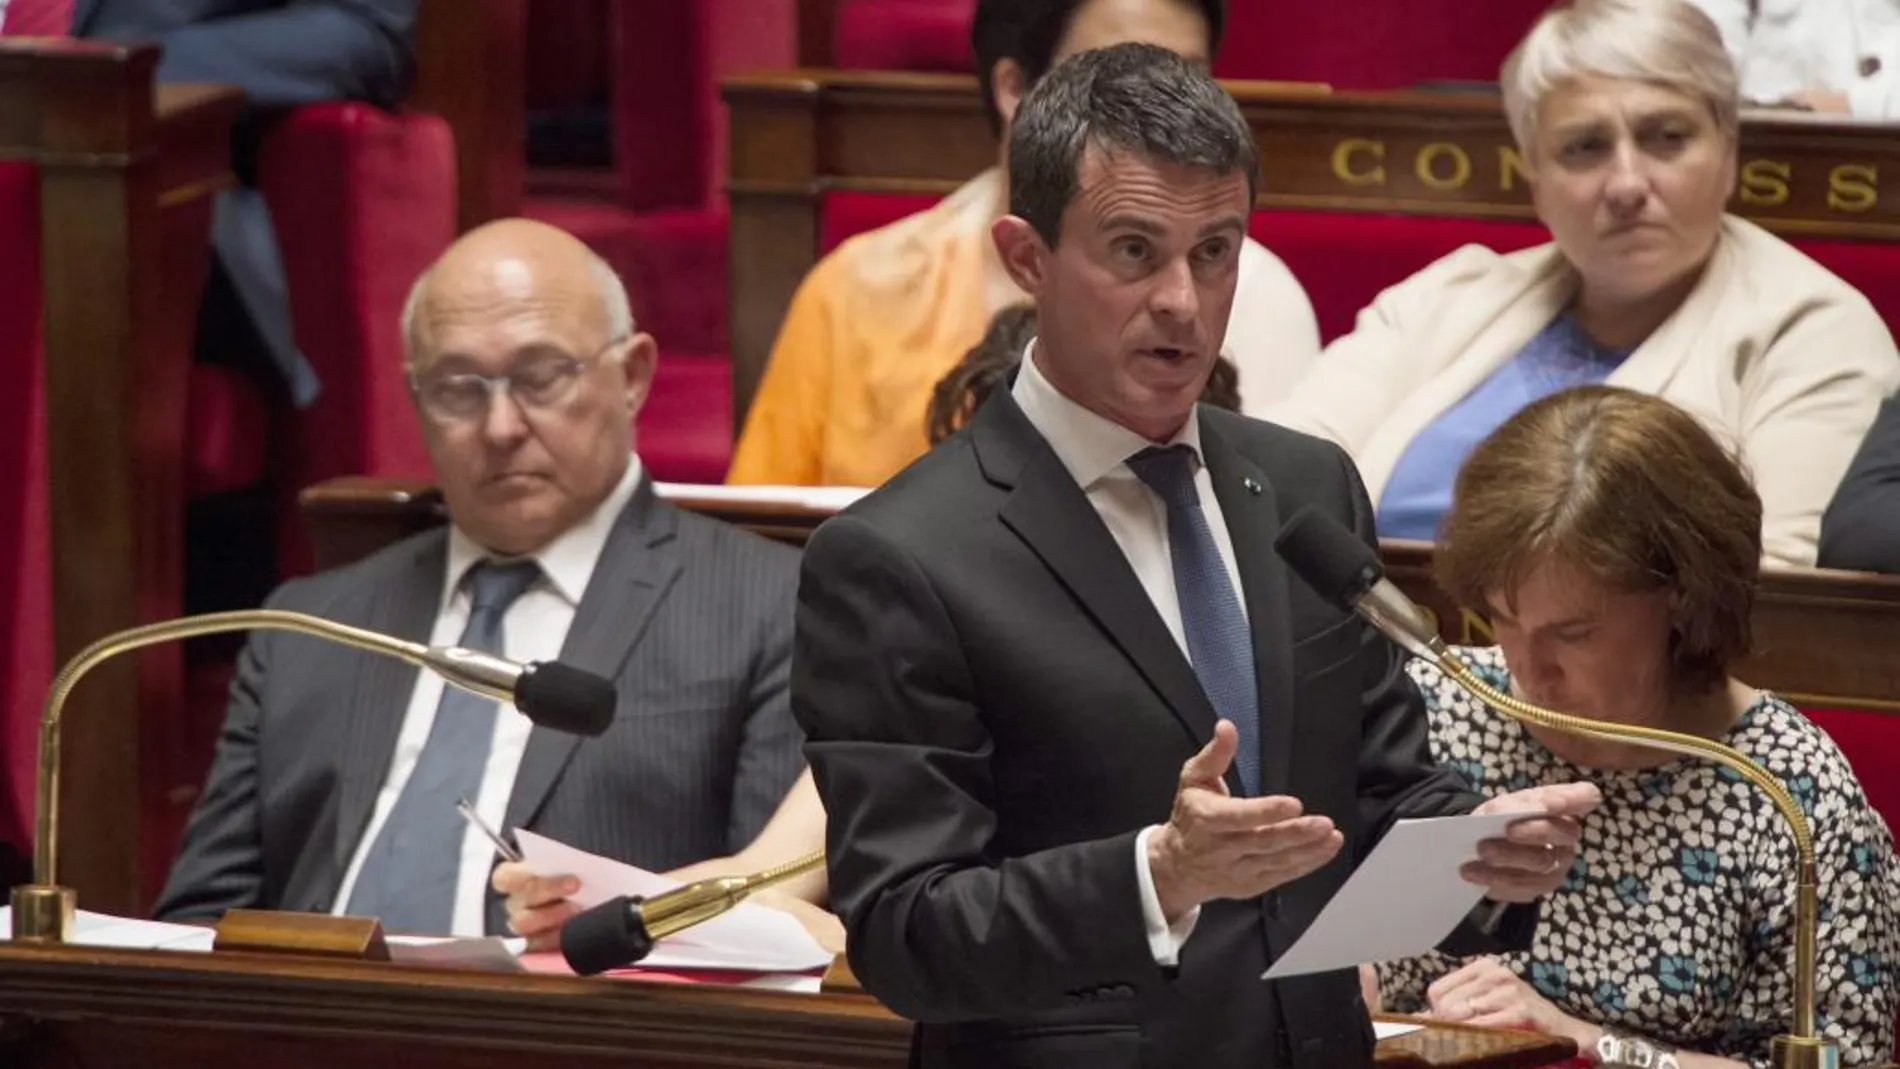 El primer ministro francés, Manuel Valls, interviene durante la sesión semanal de preguntas al gobierno en la Asamblea Nacional en París, Francia hoy 20 de julio de 2016.